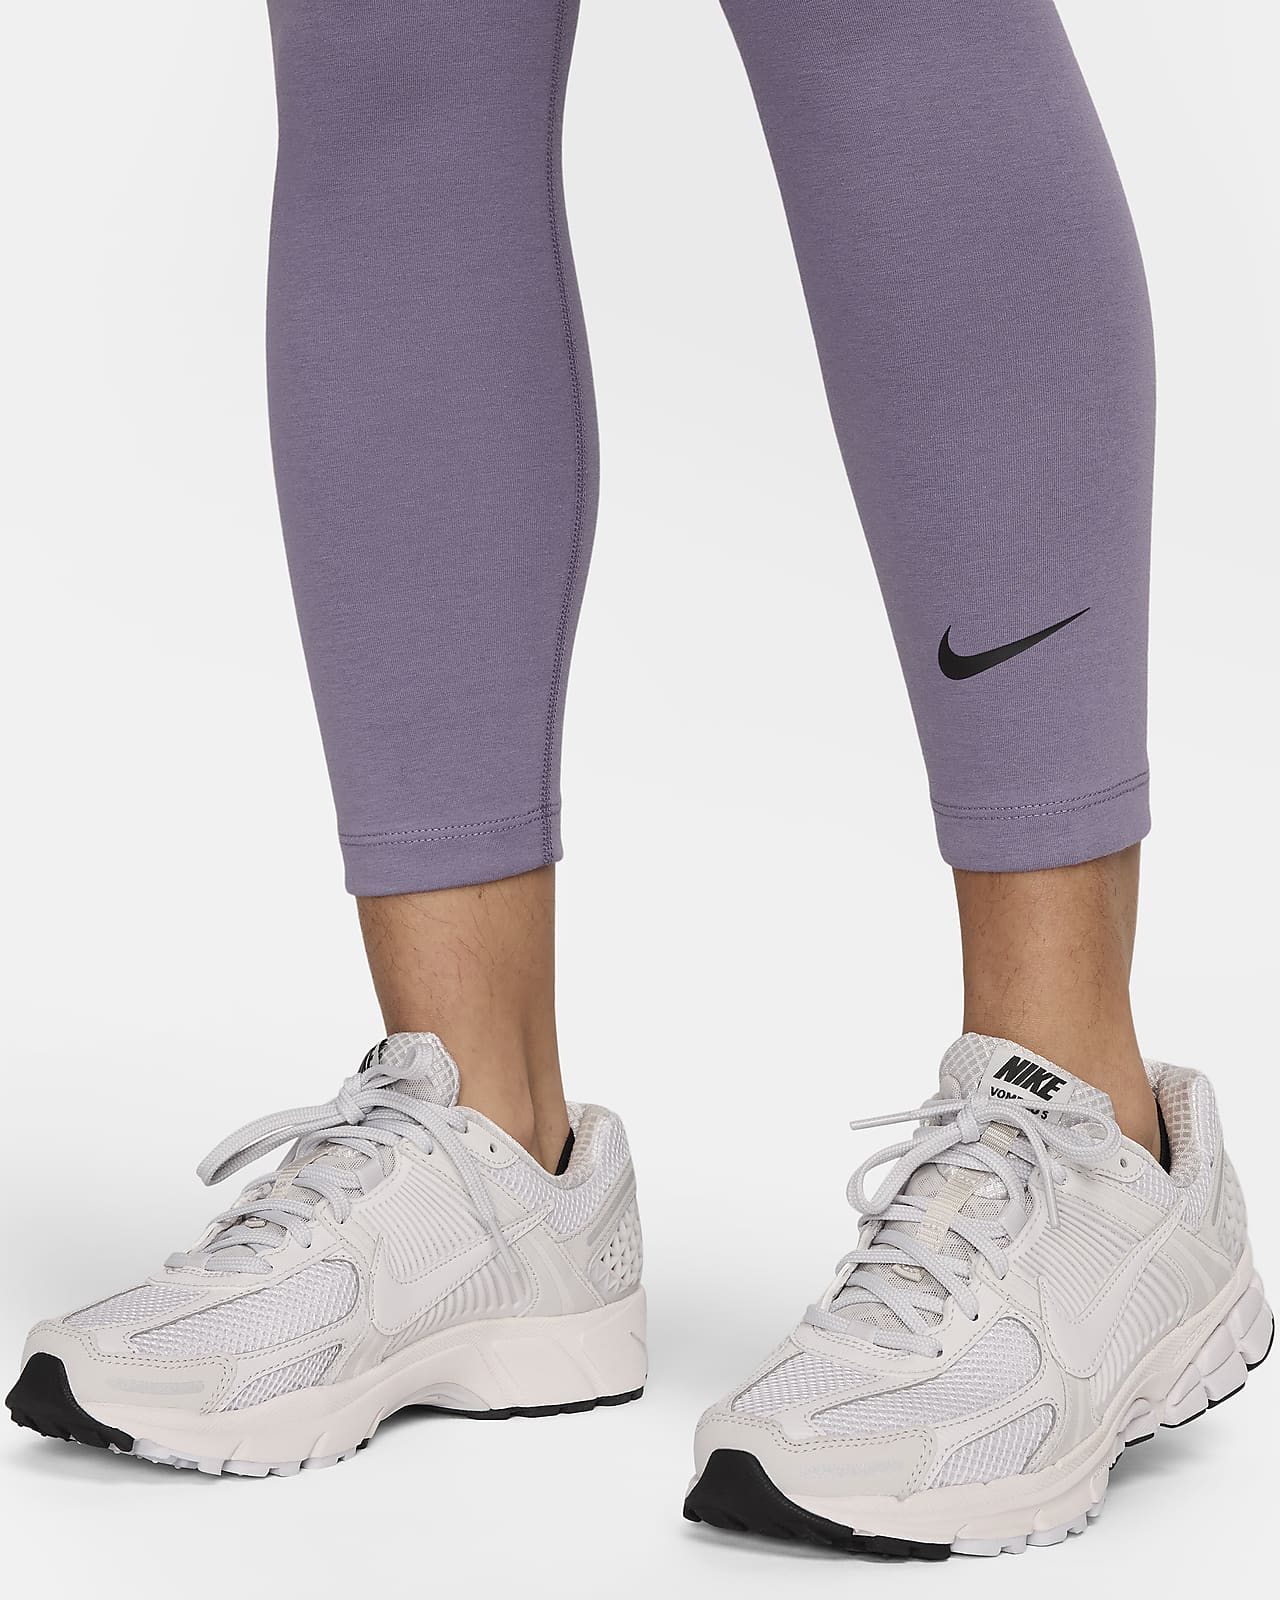 Nike Women's Yoga Black 7/8 Legging (DJ0801-010) Sizes S/M/L/XL